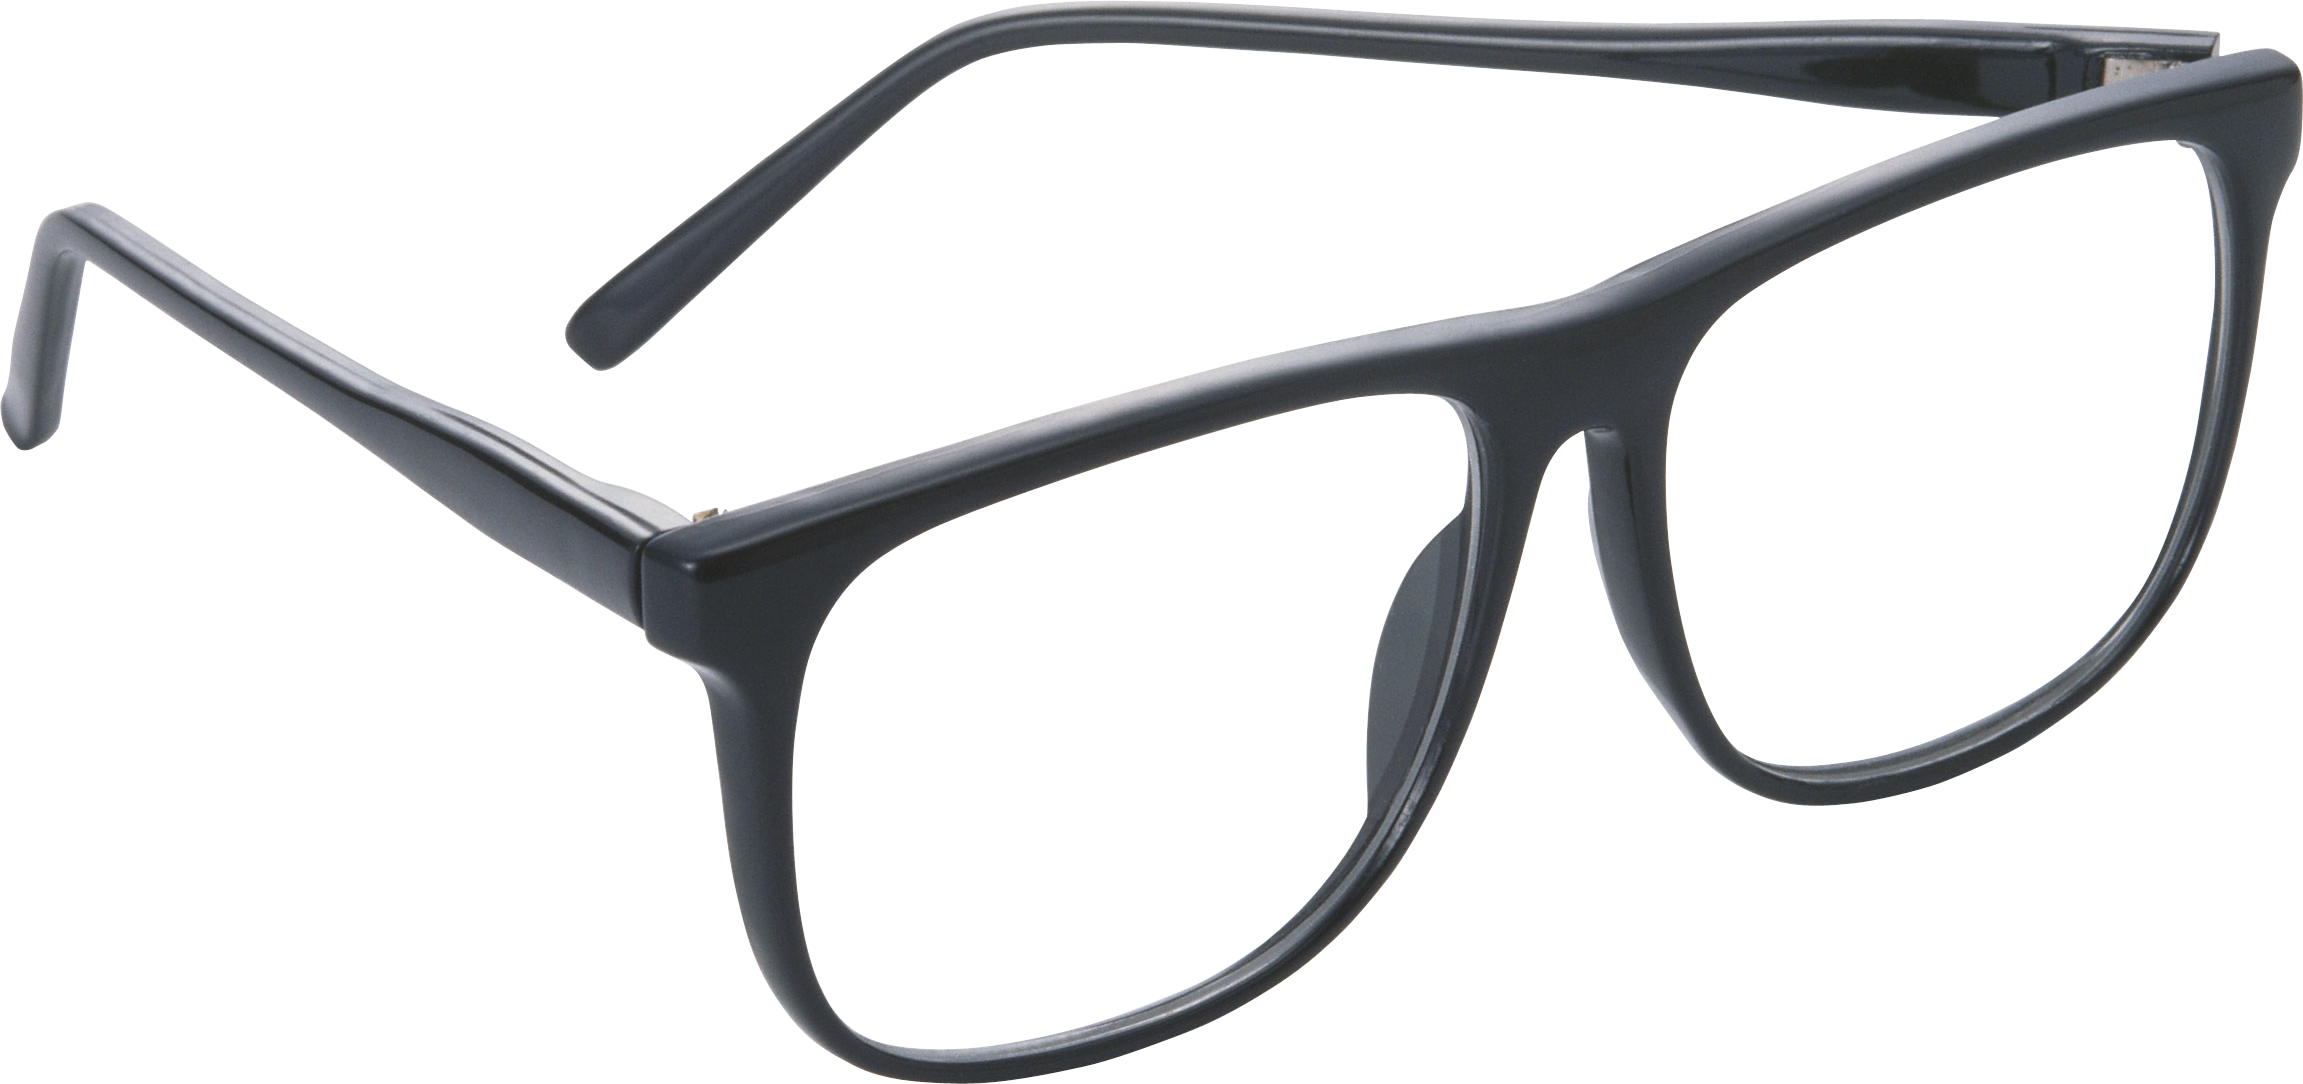 Kacamata Transparan Gambar